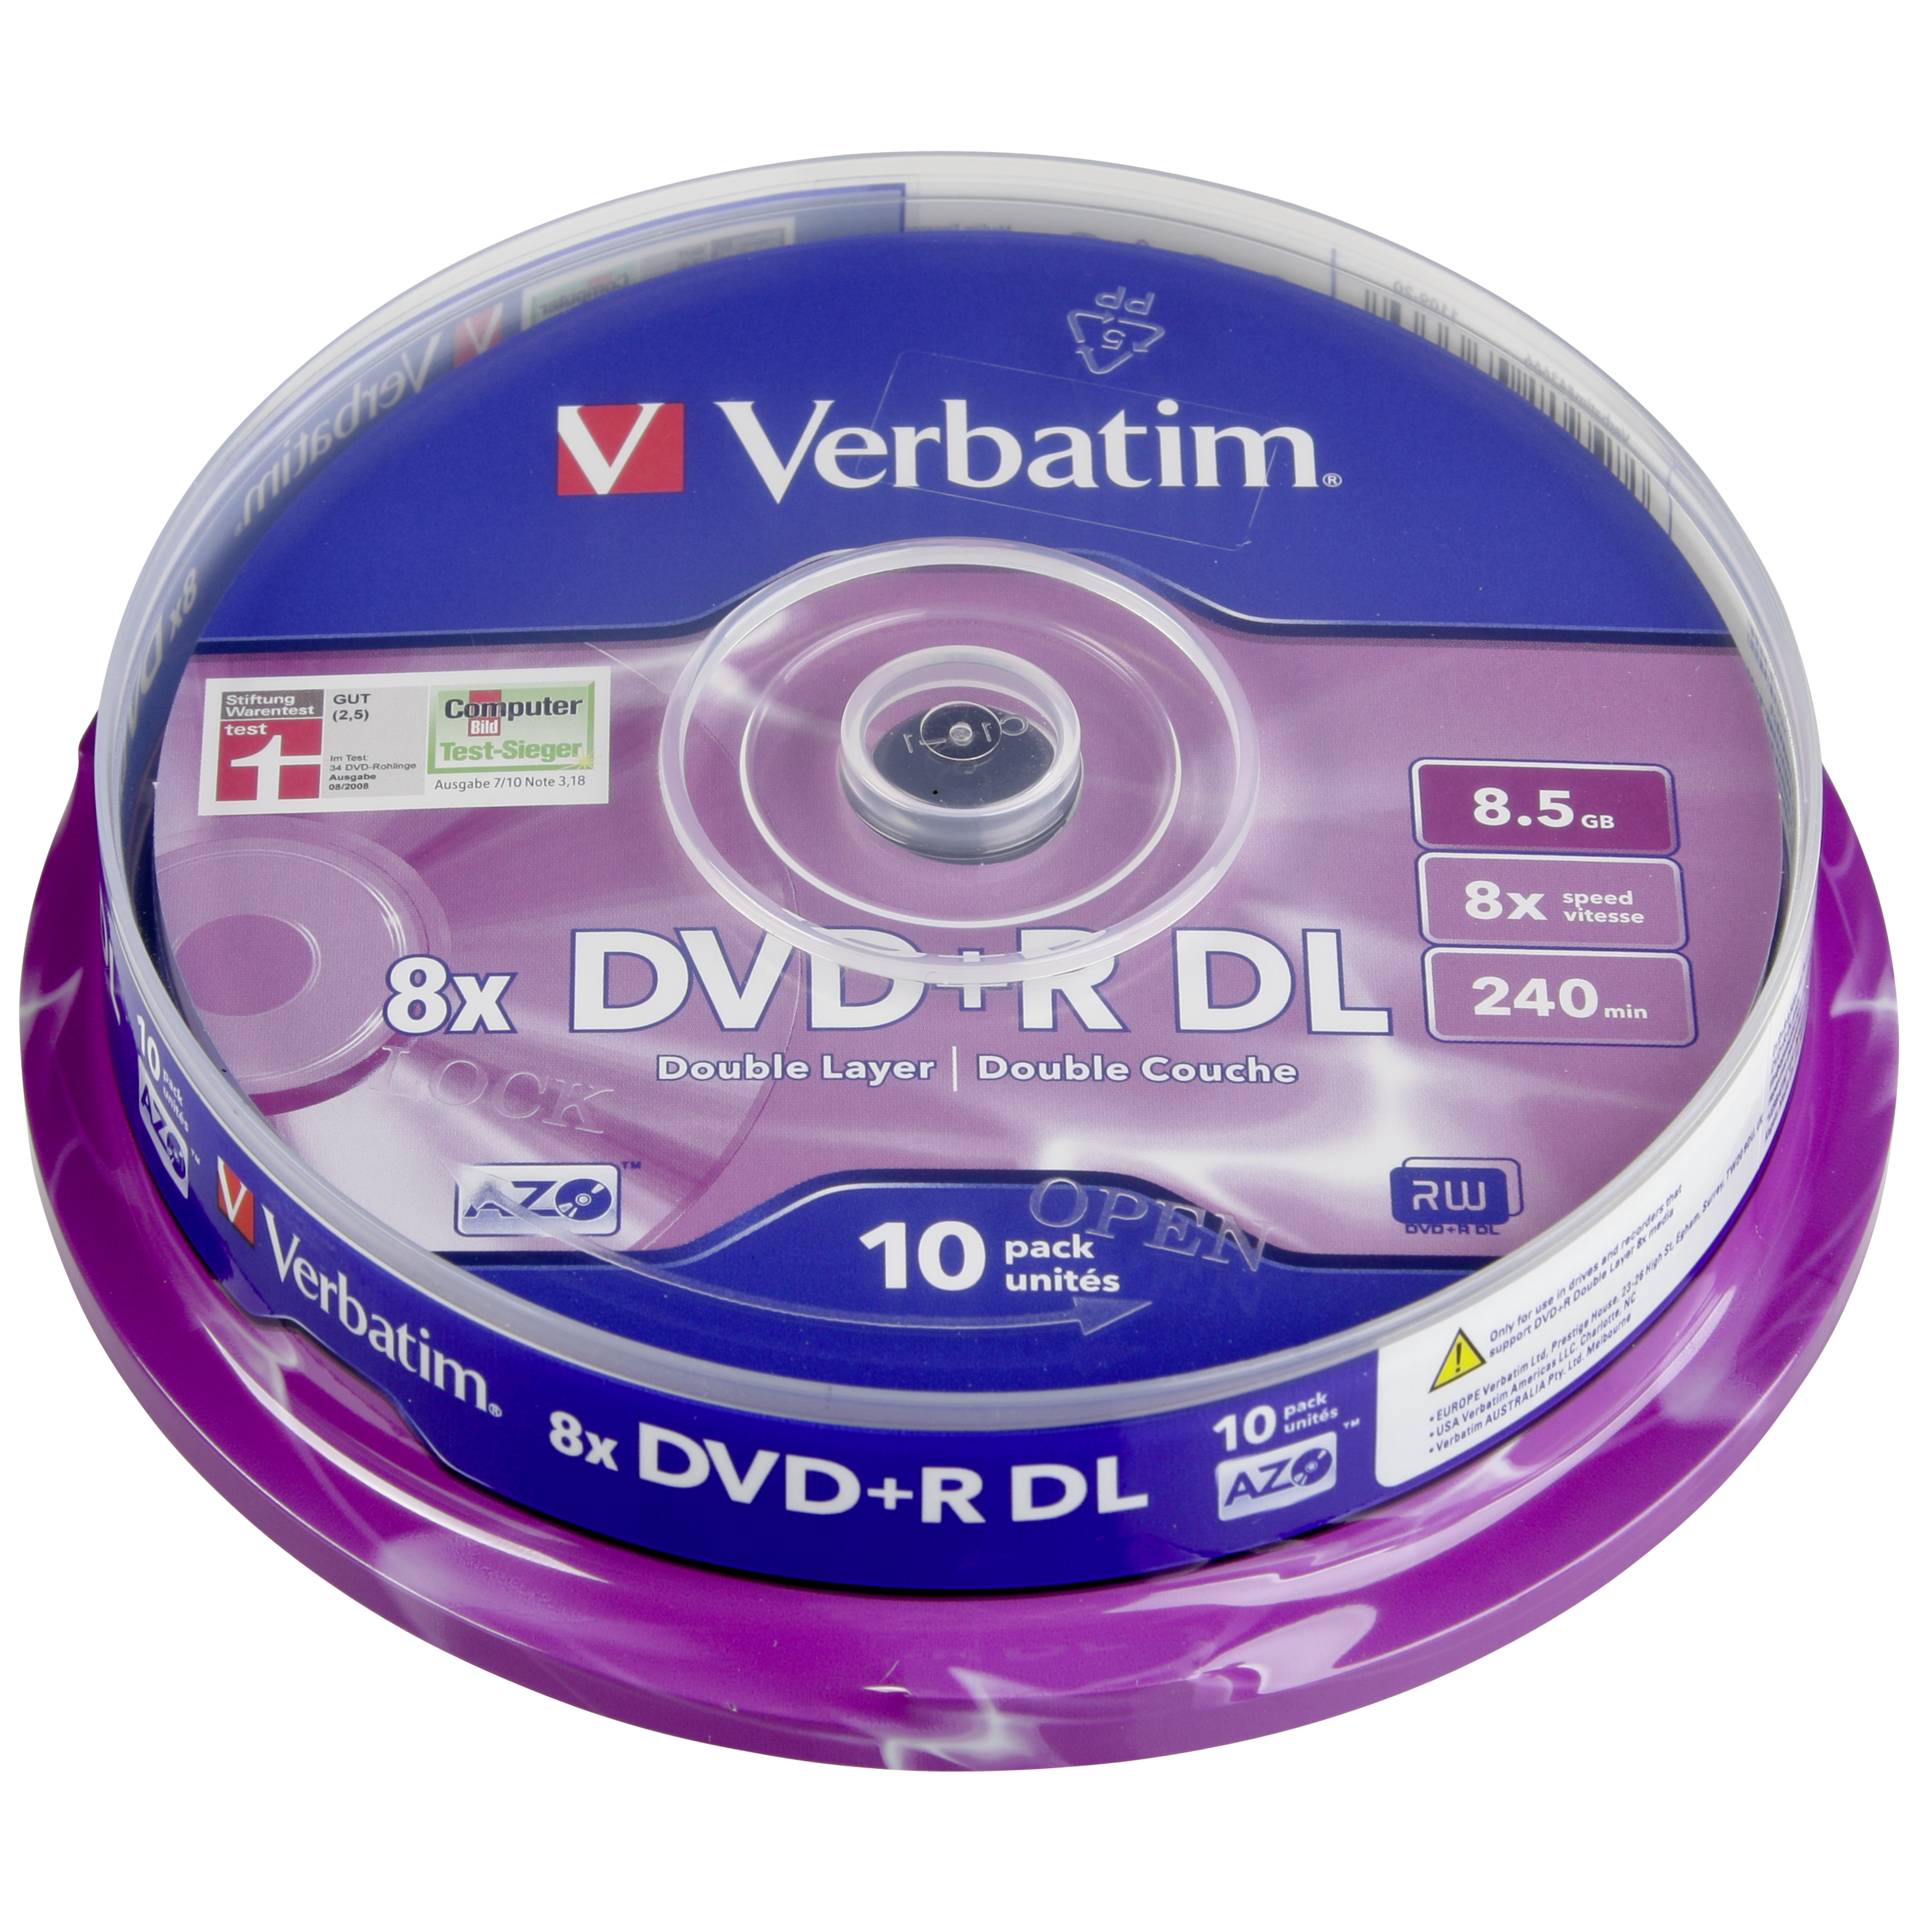 1x10 Verbatim DVD+R Double Layer 8x Speed, 8,5GB opaco argen